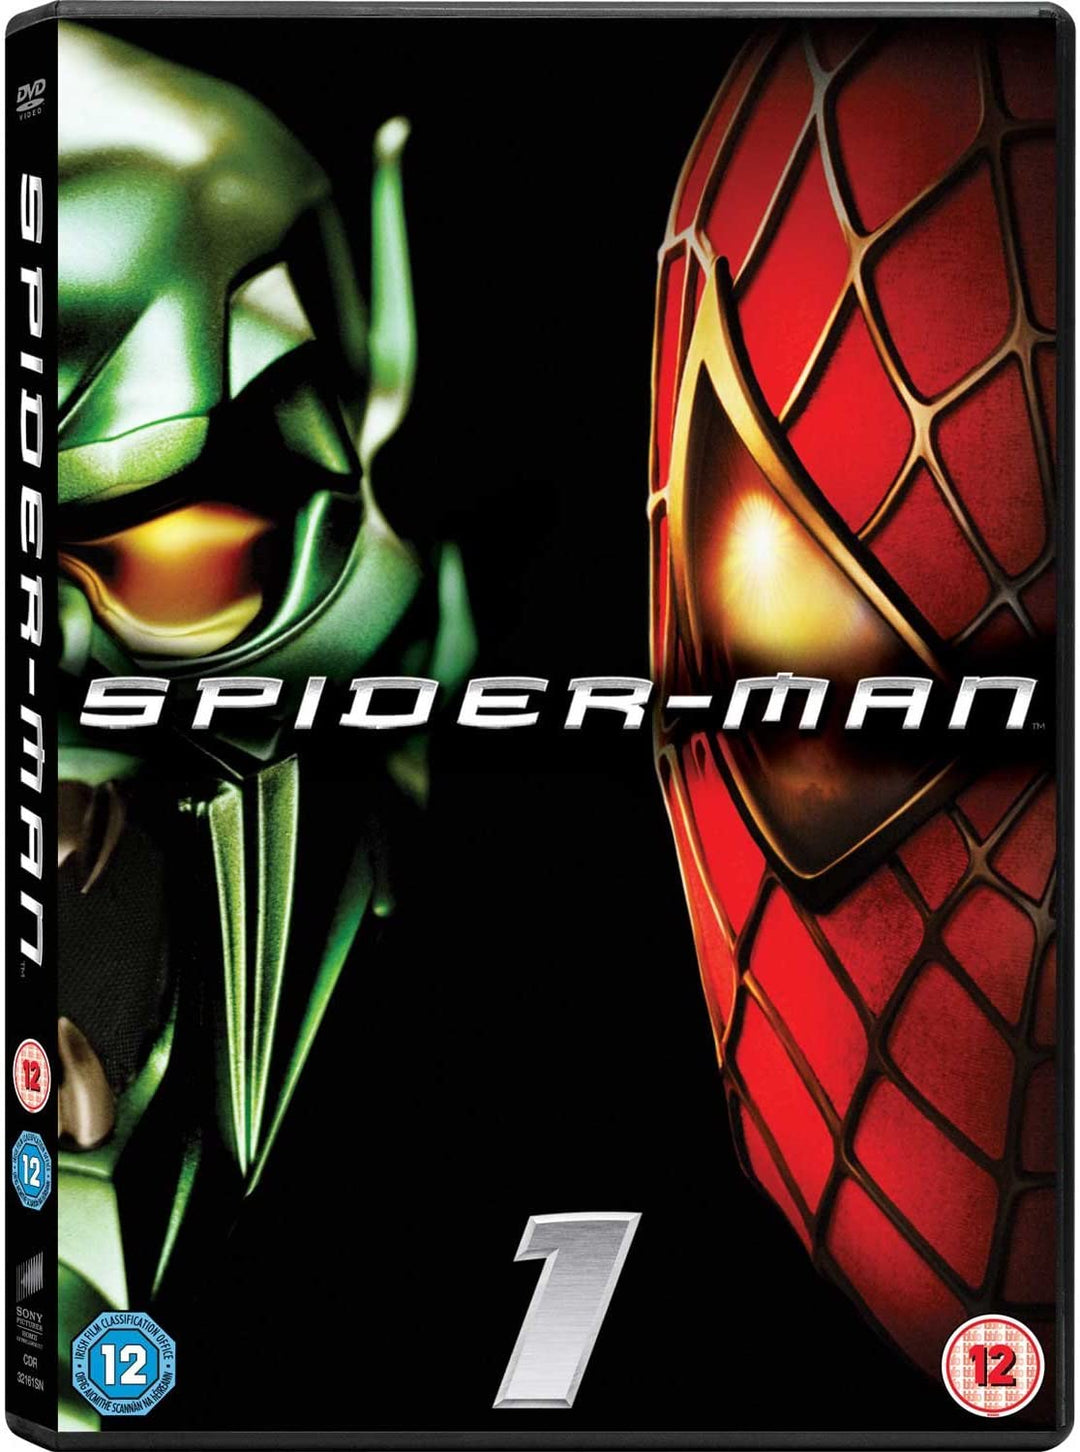 Spider-Man (2002) - Action/Sci-fi [DVD]